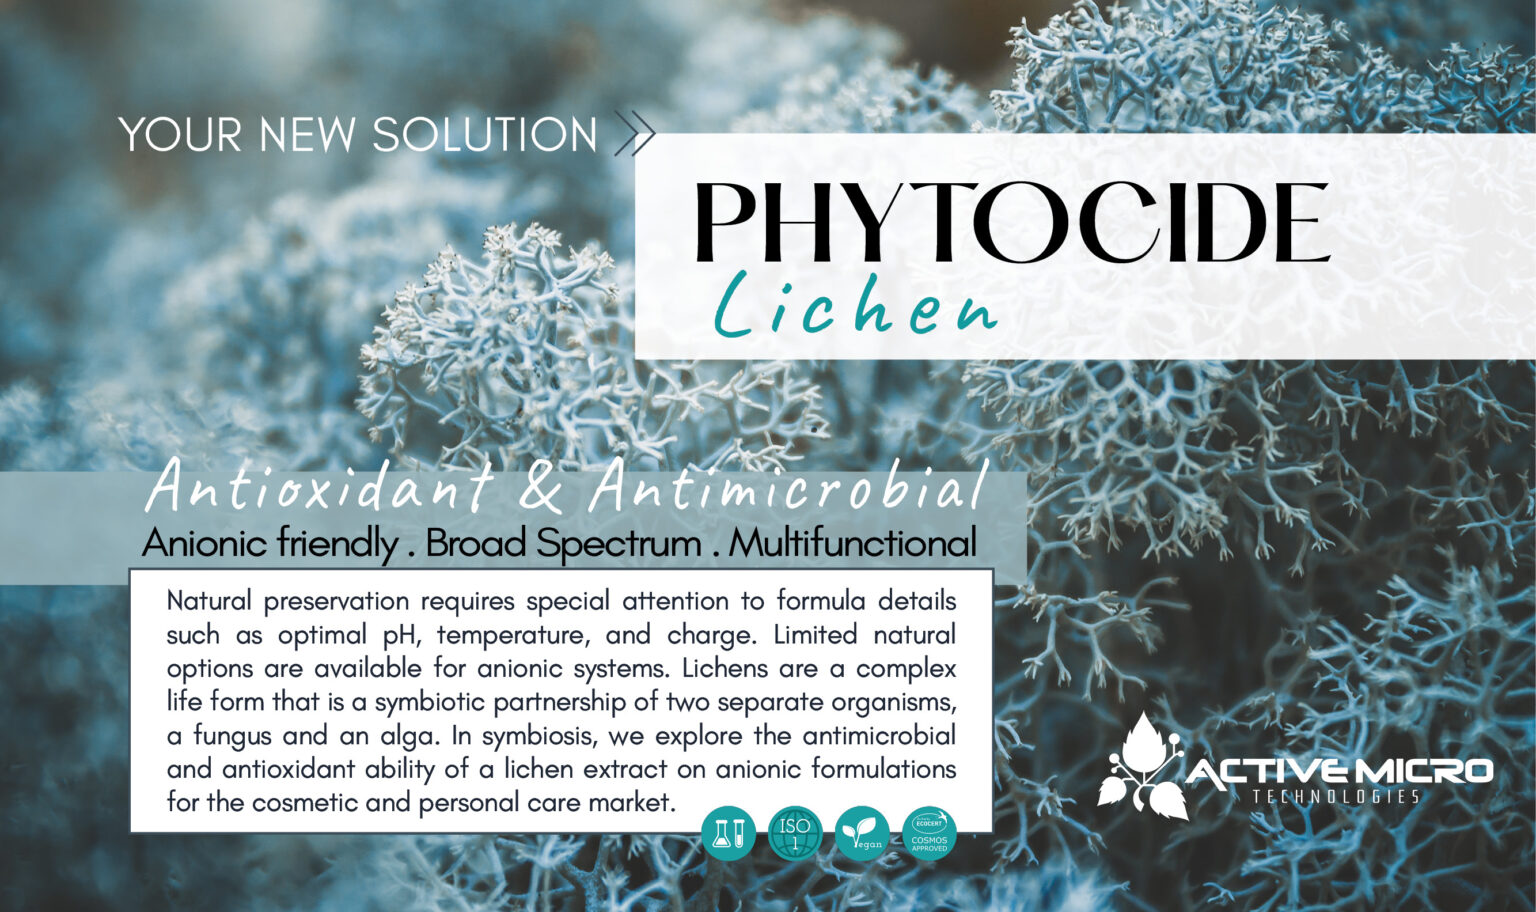 PhytoCide Lichen